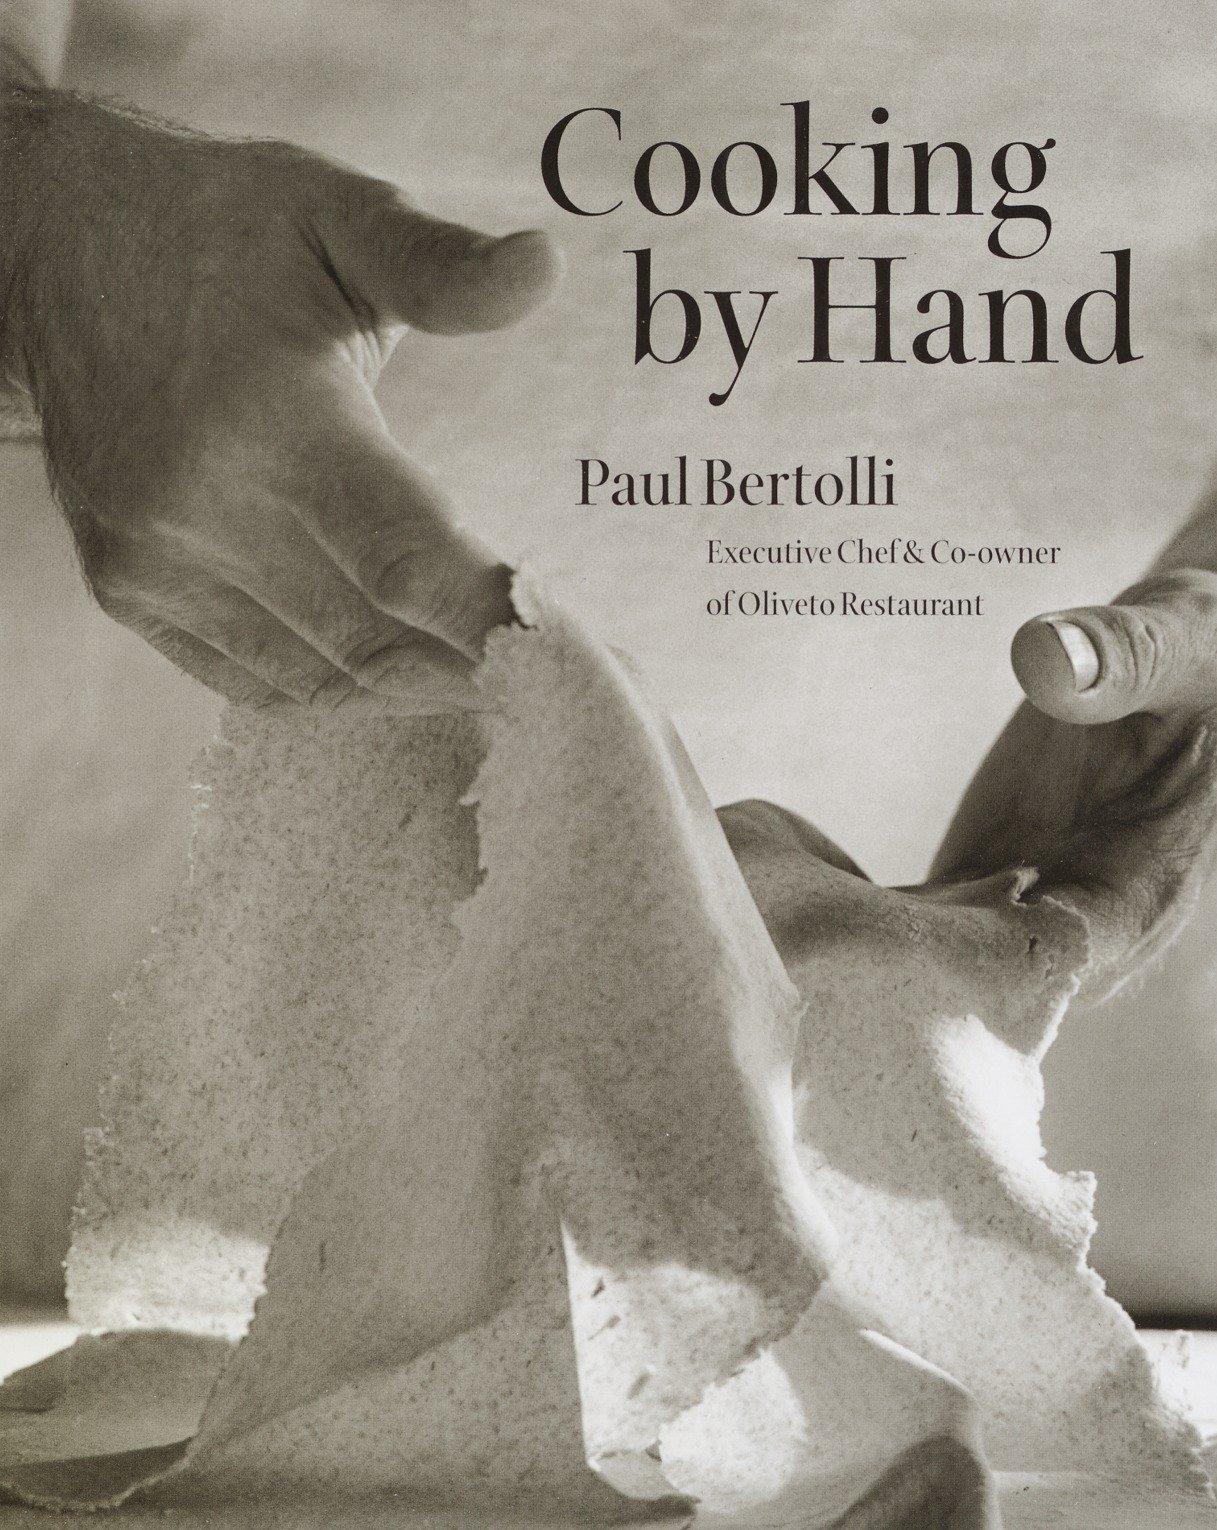 Cooking by Hand: A Cookbook / Paul Bertolli / Buch / Englisch / 2003 / POTTER CLARKSON N / EAN 9780609608937 - Bertolli, Paul